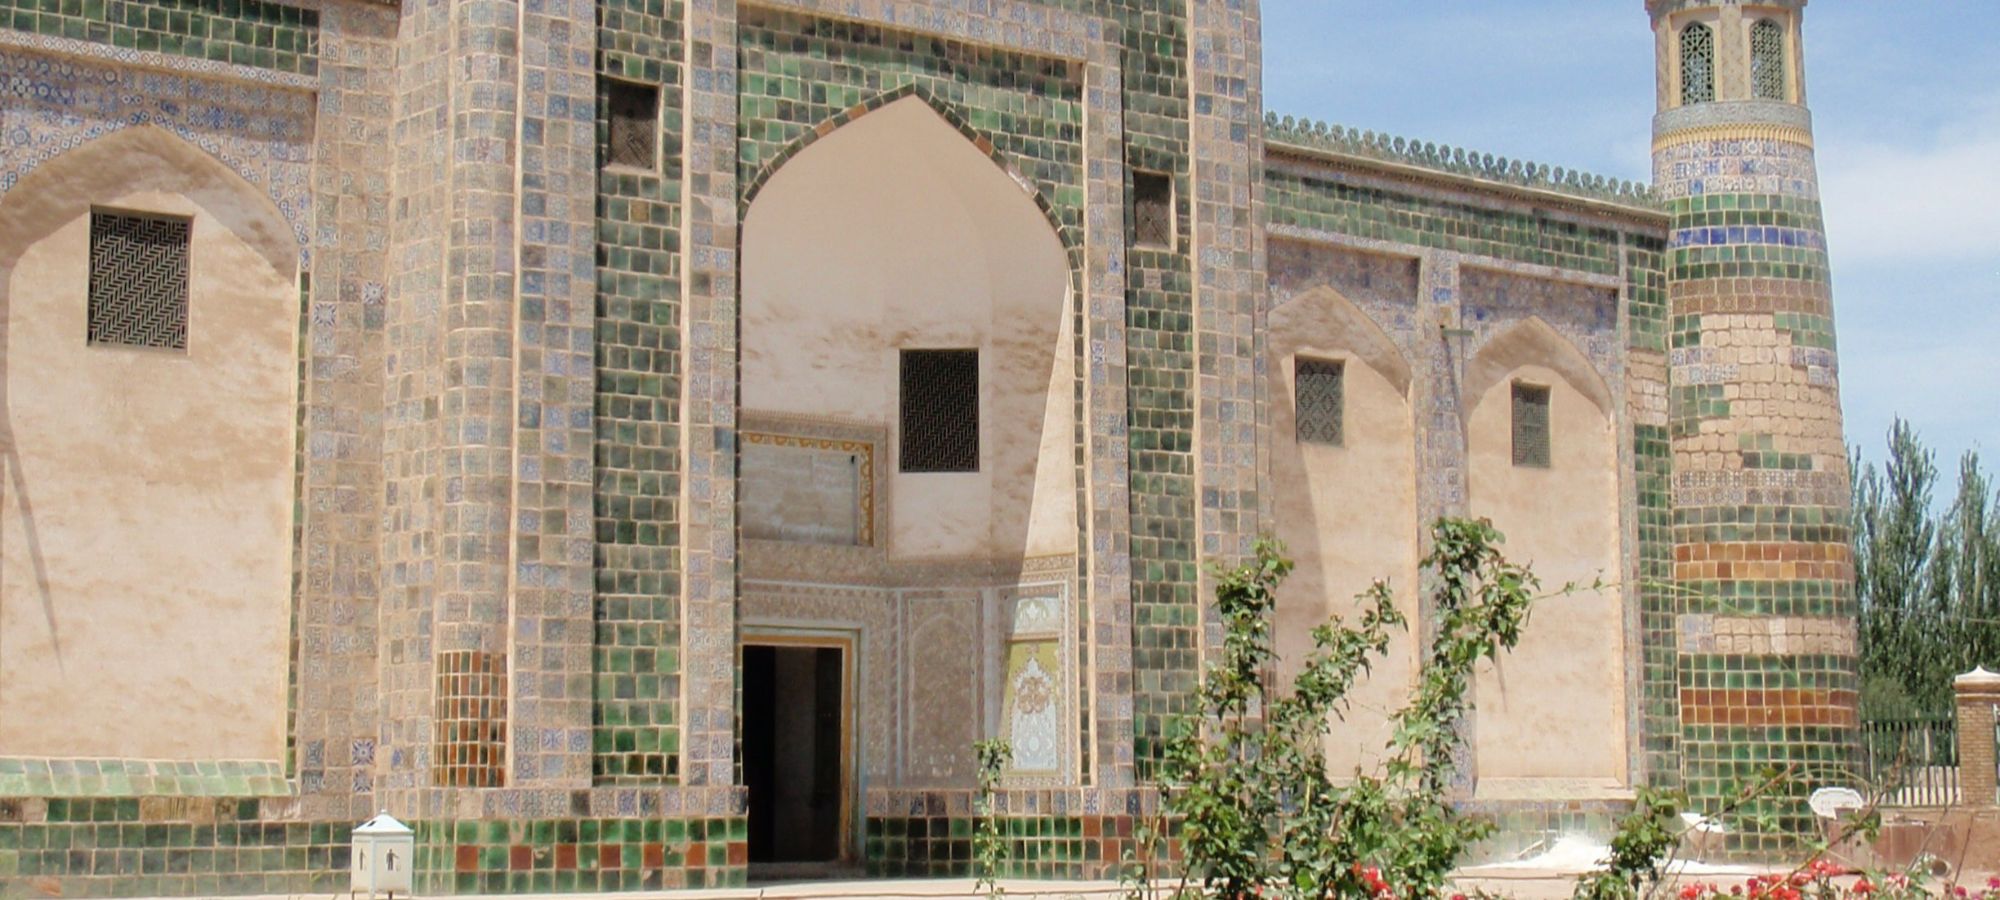 Id Kah mosque Kashgar (Kashi) 